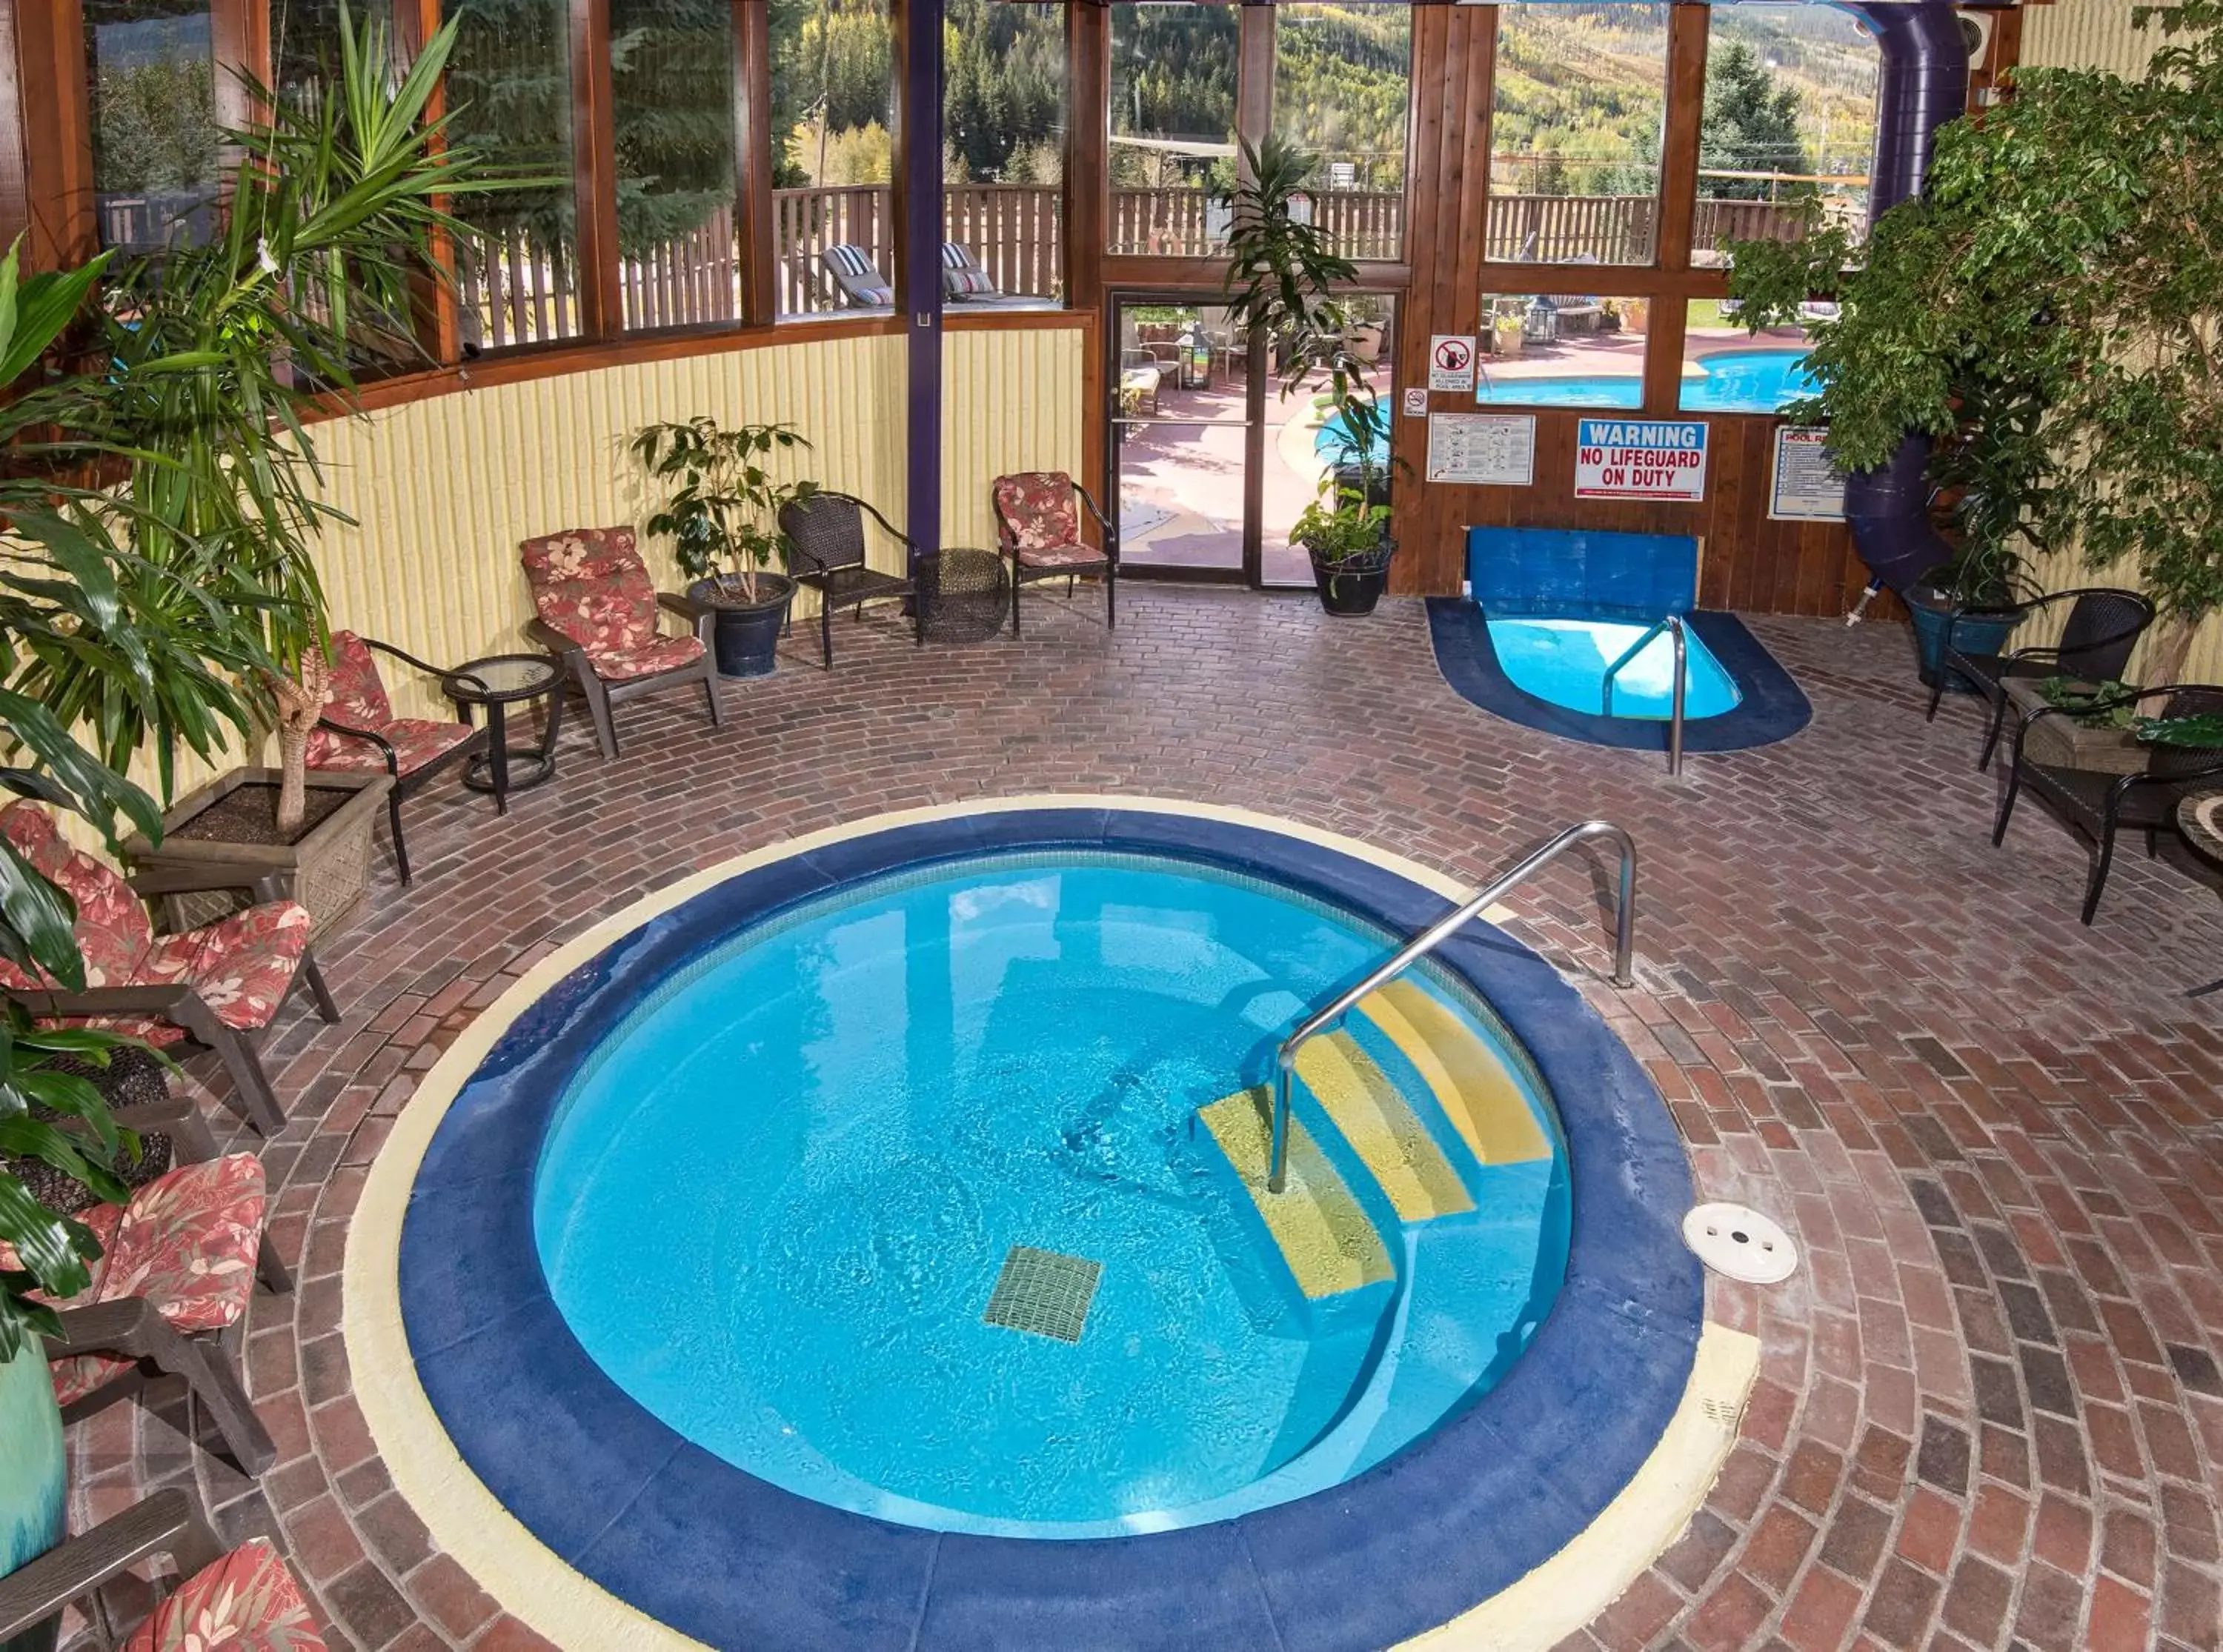 Hot Tub, Pool View in Vail Run Resort